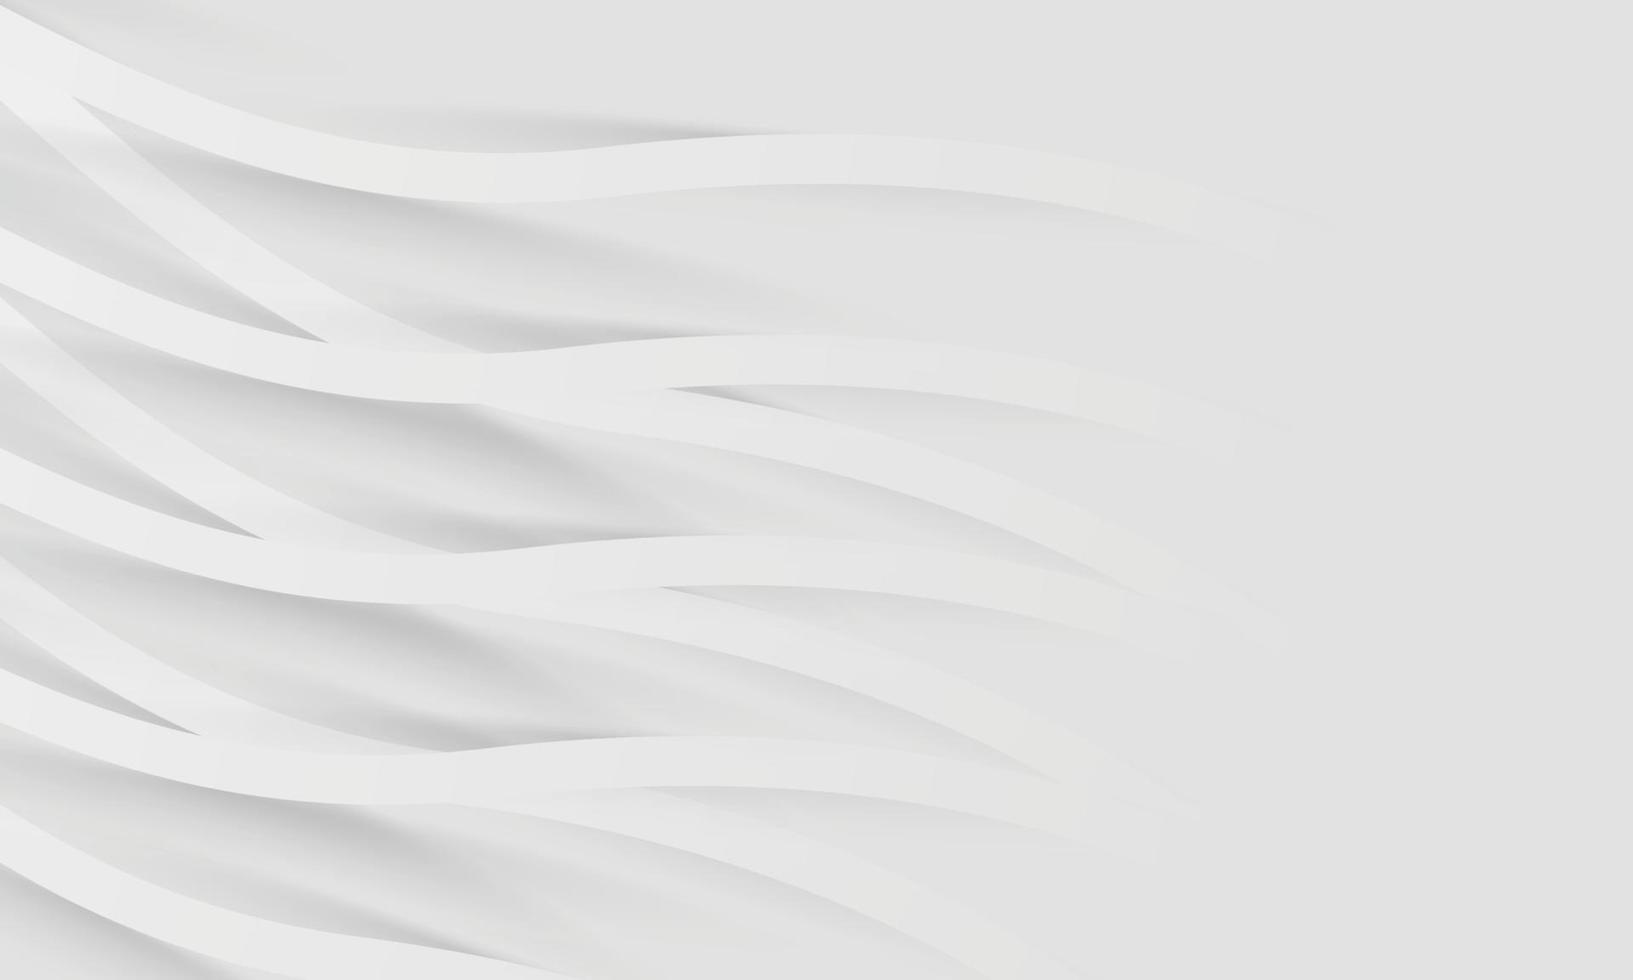 wit elegant lijnen abstract achtergrond ontwerp. modern witte golf meta abstract achtergrond verzameling vector